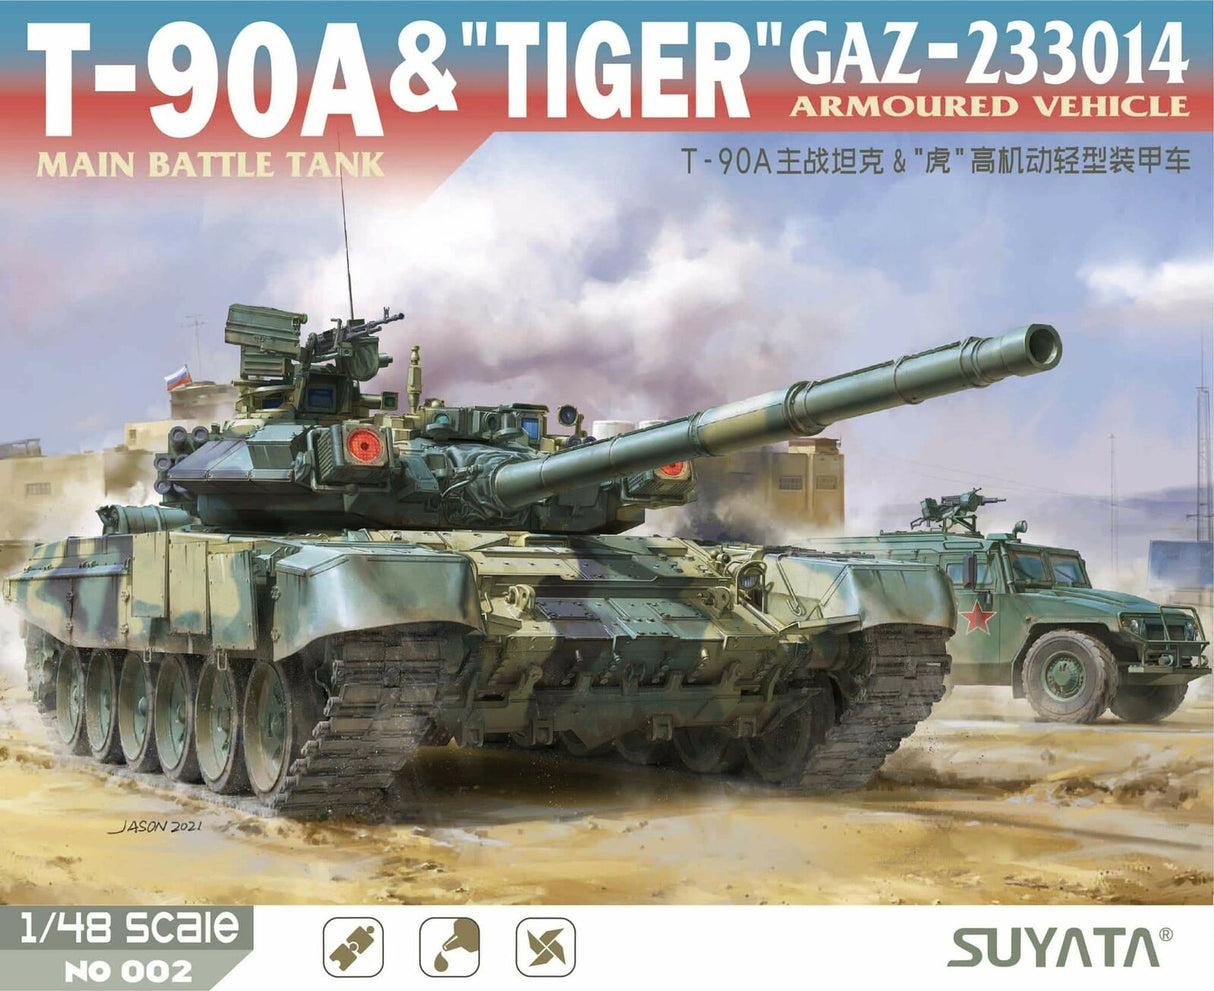 Suyata 1/48 T-90 and GAZ-233014 "TIGER"